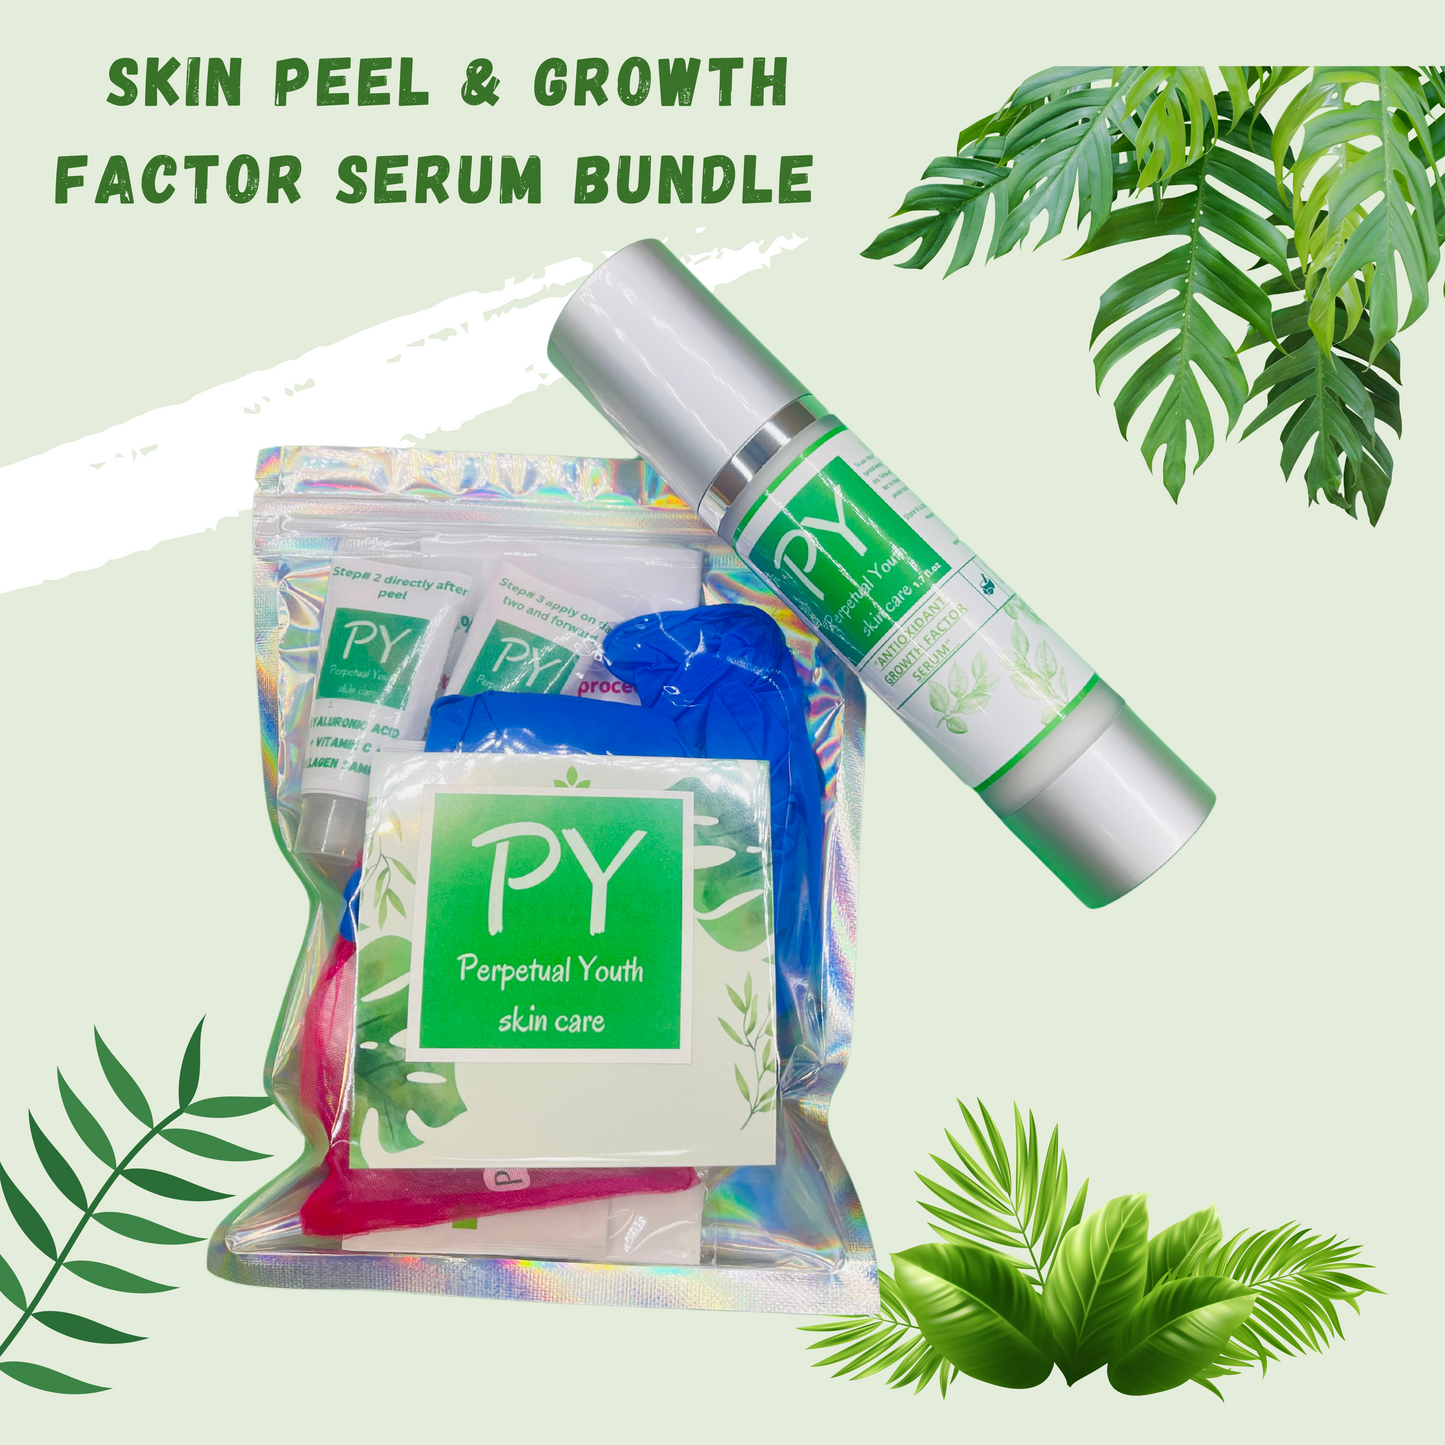 Skin Peel & Growth Factor Serum Bundle